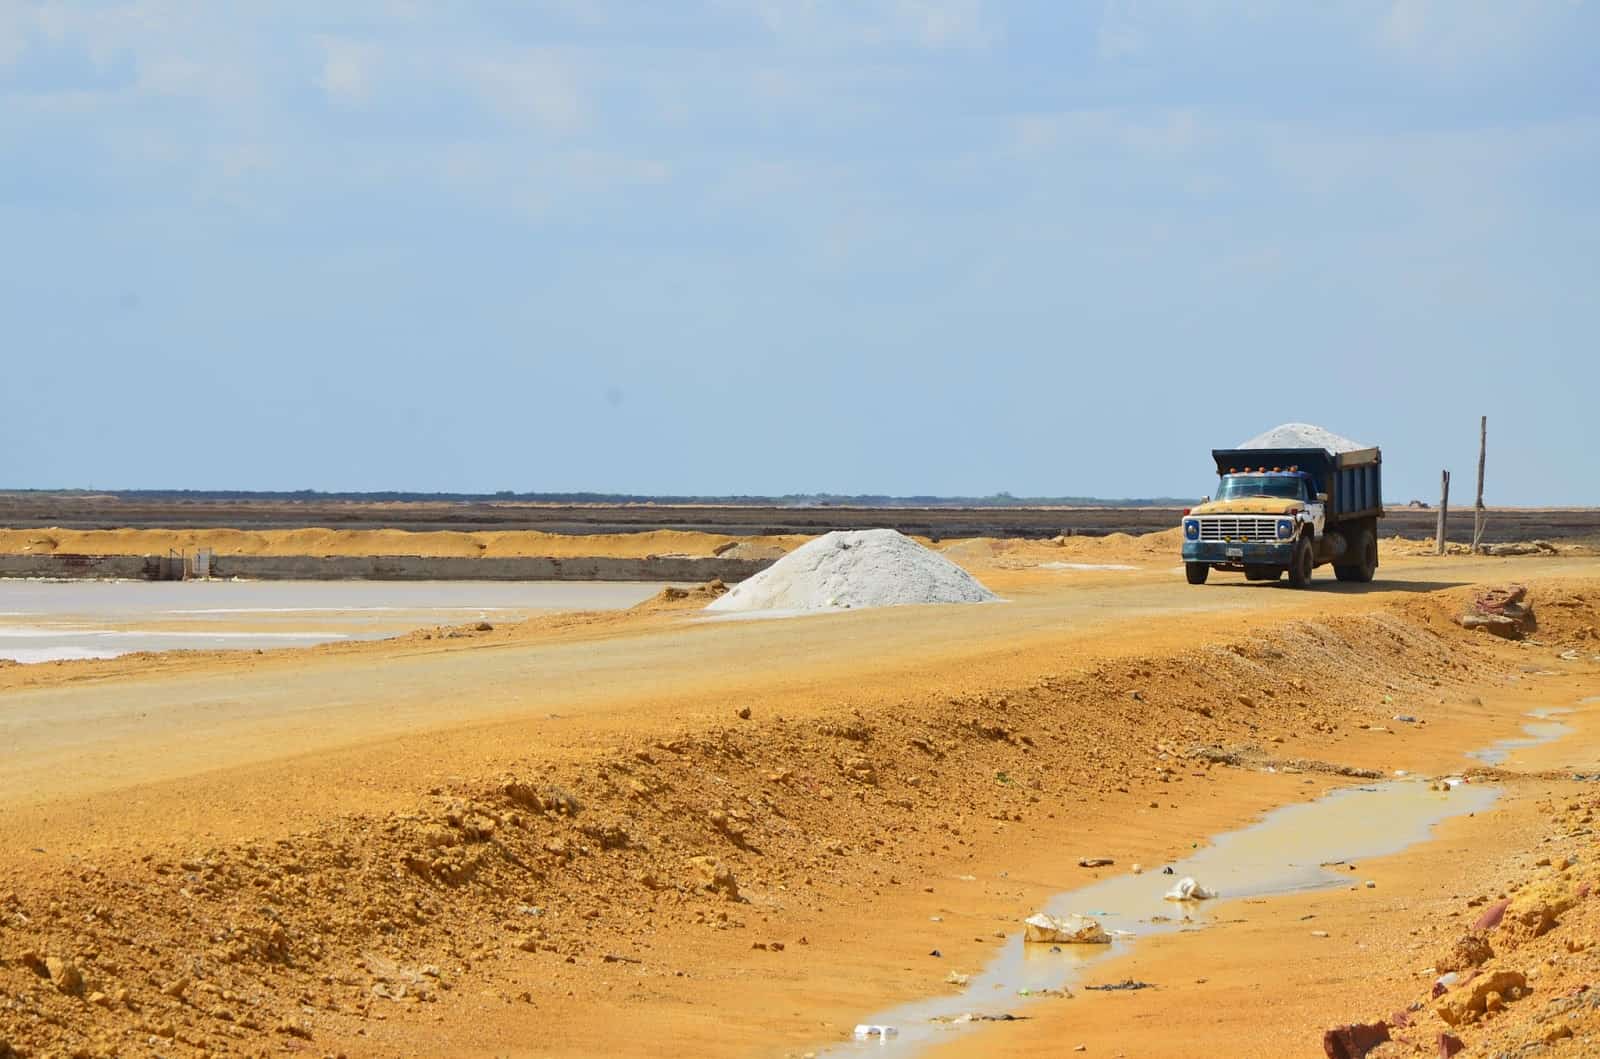 Salt mine in Manaure, La Guajira, Colombia